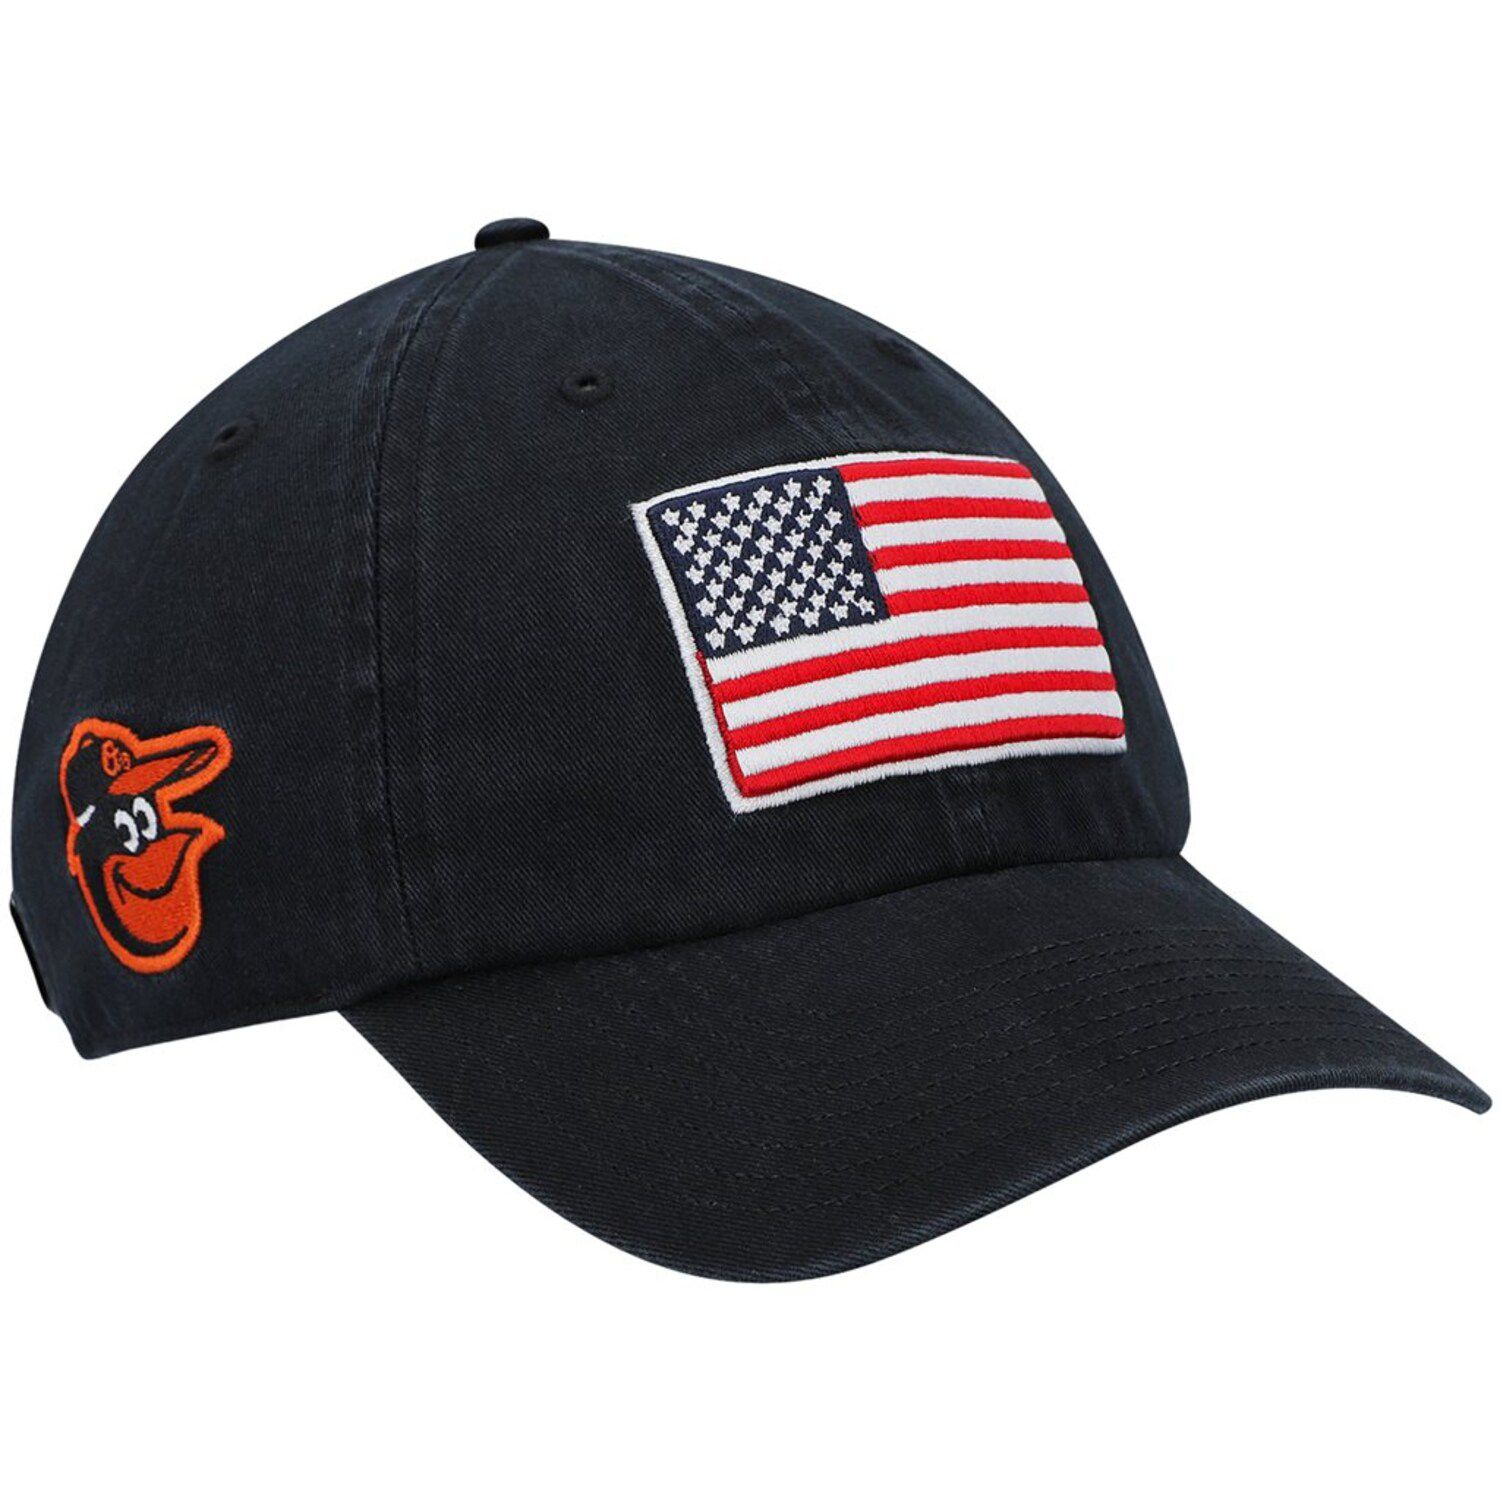 Image for Unbranded Men's '47 Black Baltimore Orioles Heritage Front Clean Up Adjustable Hat at Kohl's.